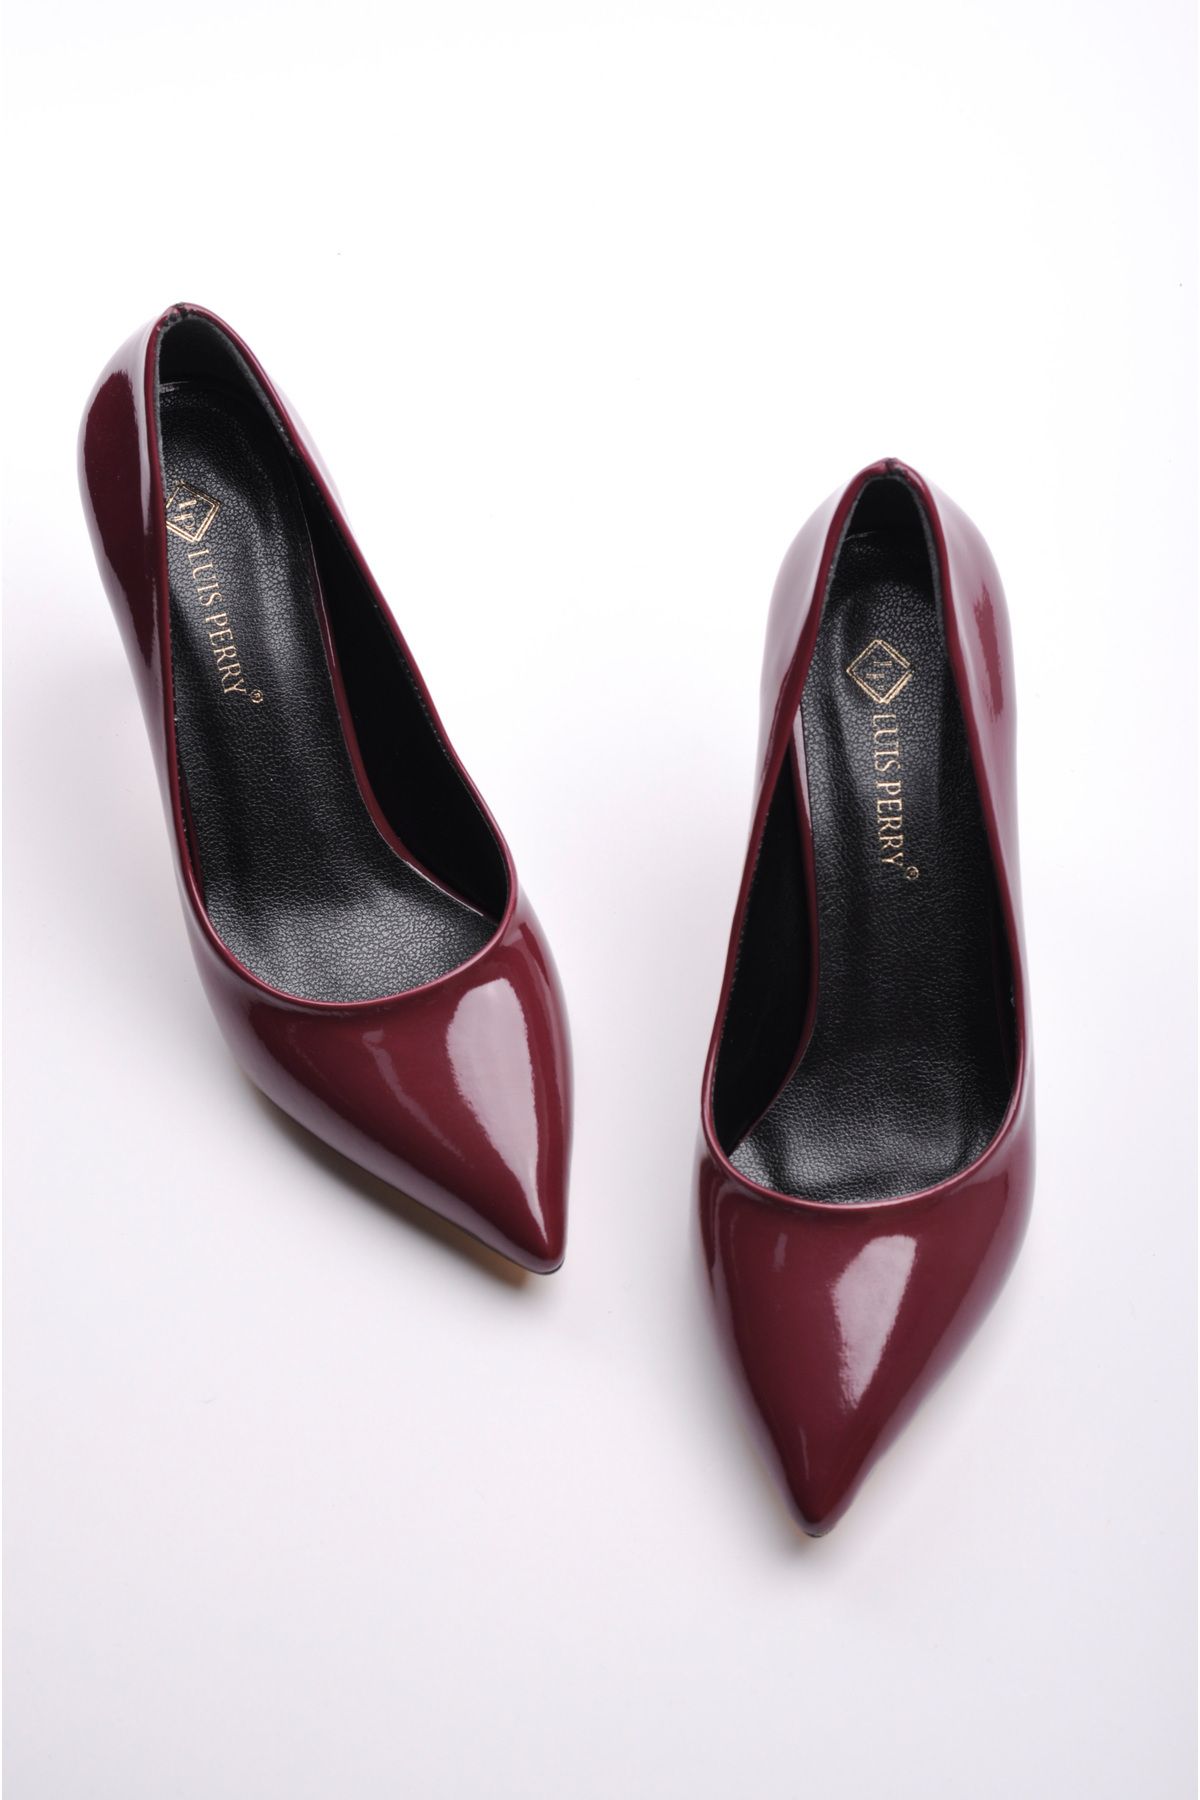 LuisPerry Kadın Topuklu Ayakkabı - Yüksek Topuklu Stiletto Rahat Şık ve Iş Ayakkabısı Bordo Renk Rugan 9 Cm